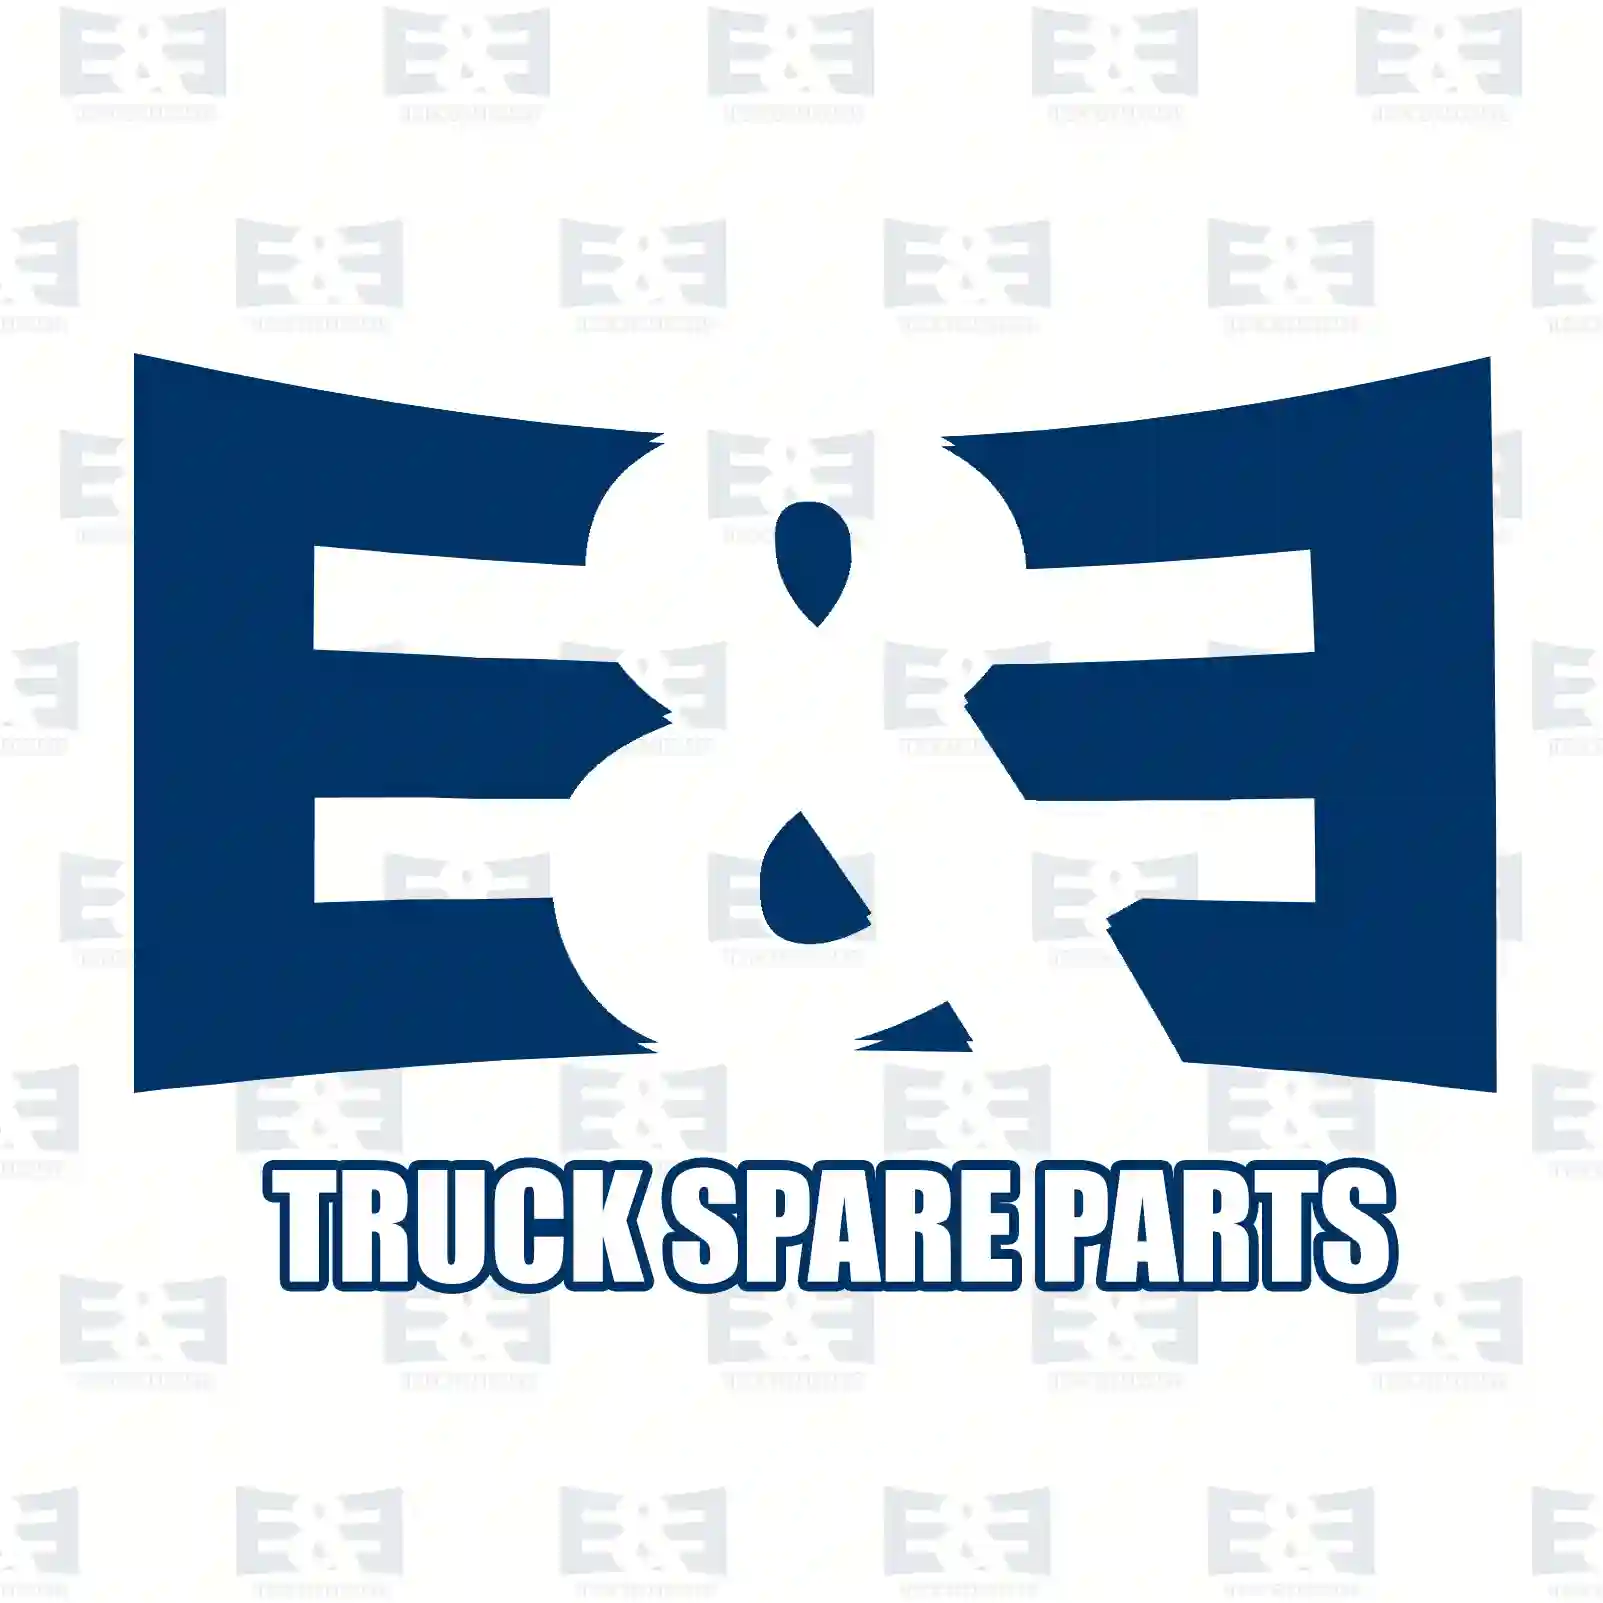 Throttle, complete, 2E2209540, 8188890, 818889 ||  2E2209540 E&E Truck Spare Parts | Truck Spare Parts, Auotomotive Spare Parts Throttle, complete, 2E2209540, 8188890, 818889 ||  2E2209540 E&E Truck Spare Parts | Truck Spare Parts, Auotomotive Spare Parts